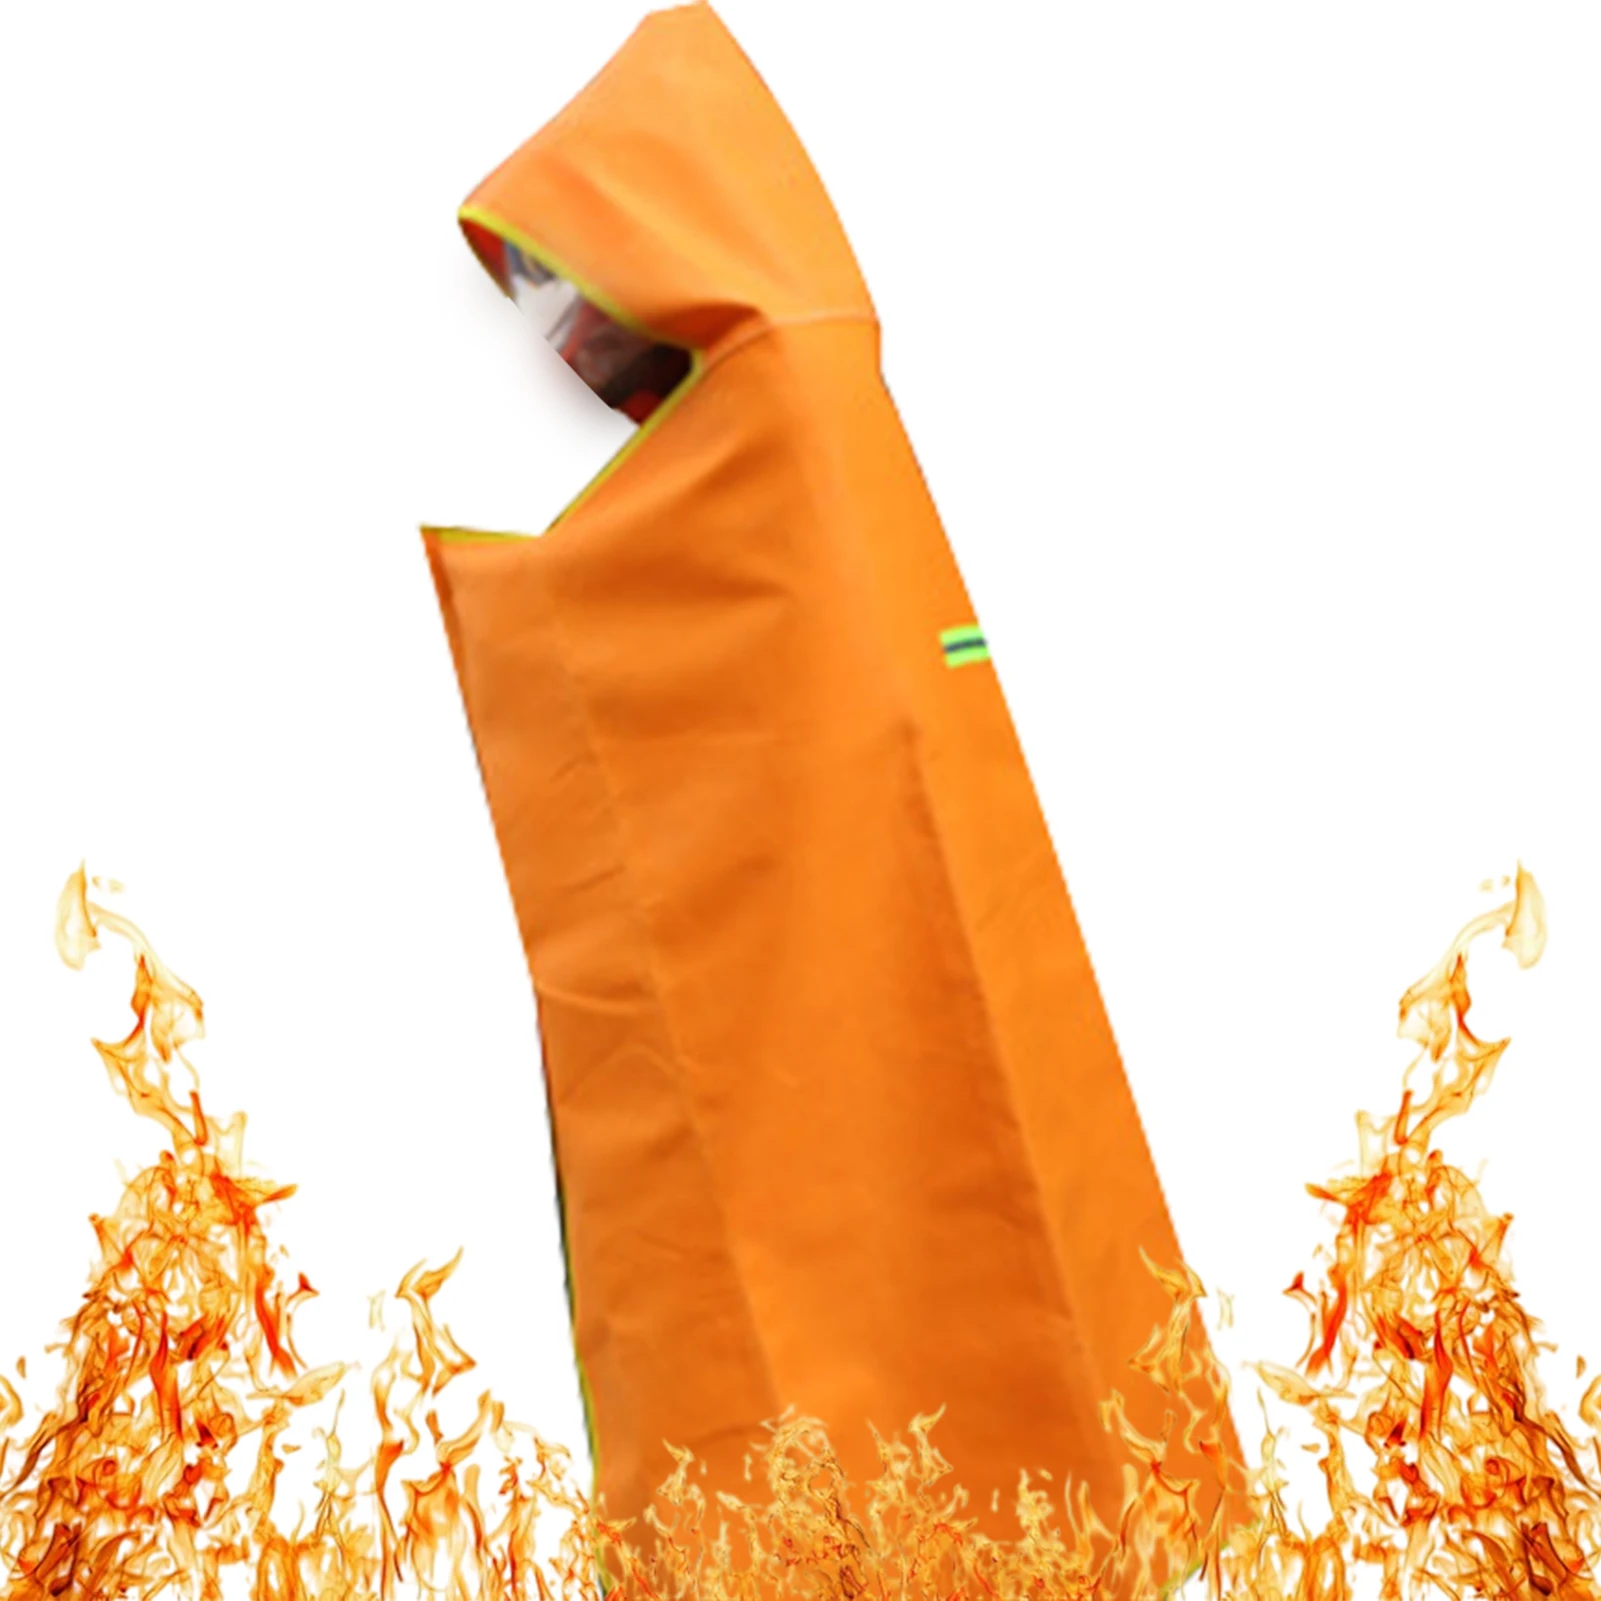 Огнестойкая накидка. Огнезащитная накидка шанс. Накидка огнестойкая спектр. Противопожарное одеяло. Накидка противопожарная огнестойкая.